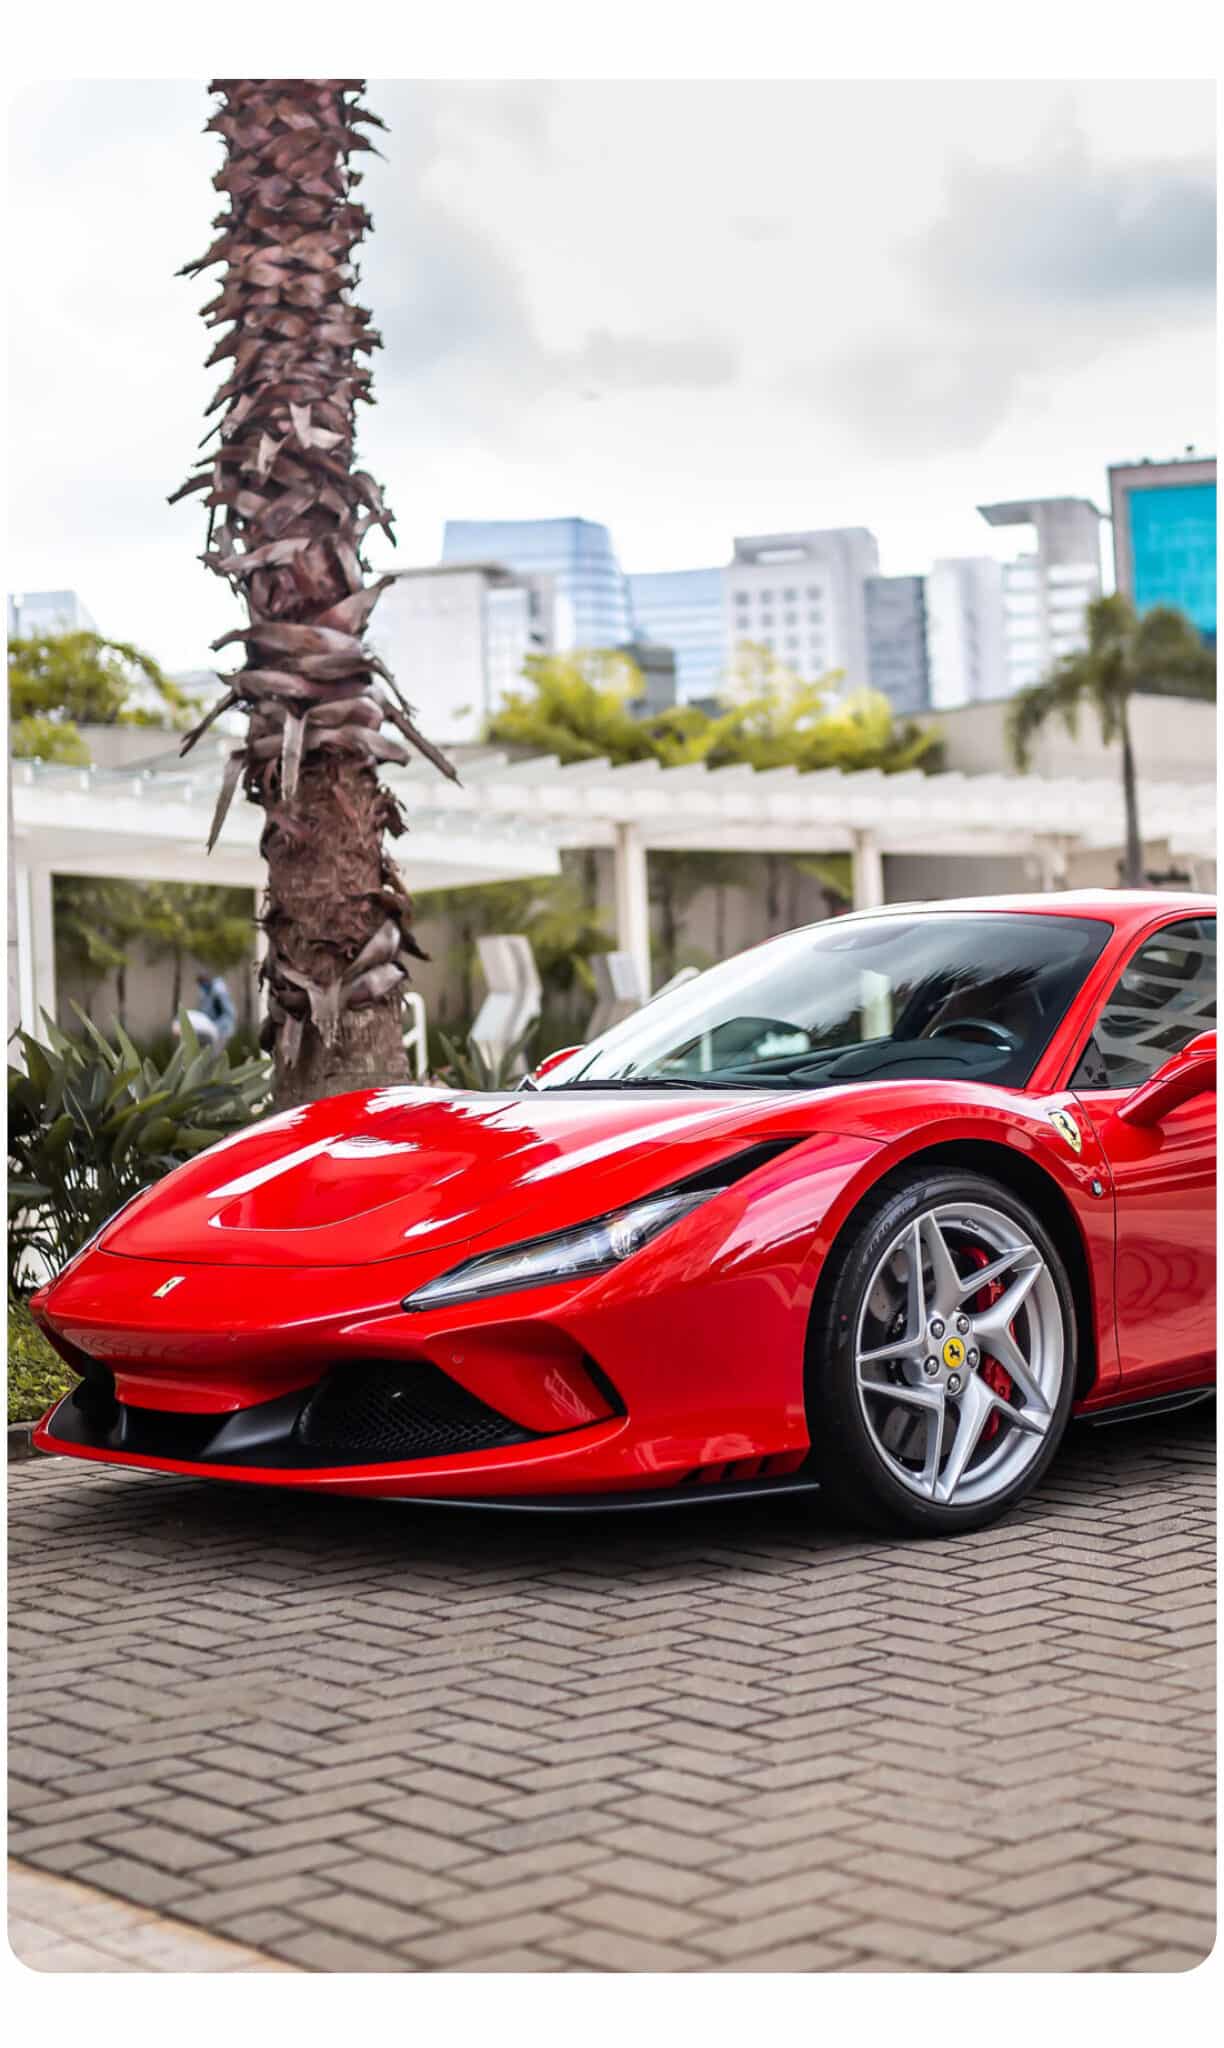 Ferrari Monaco rental